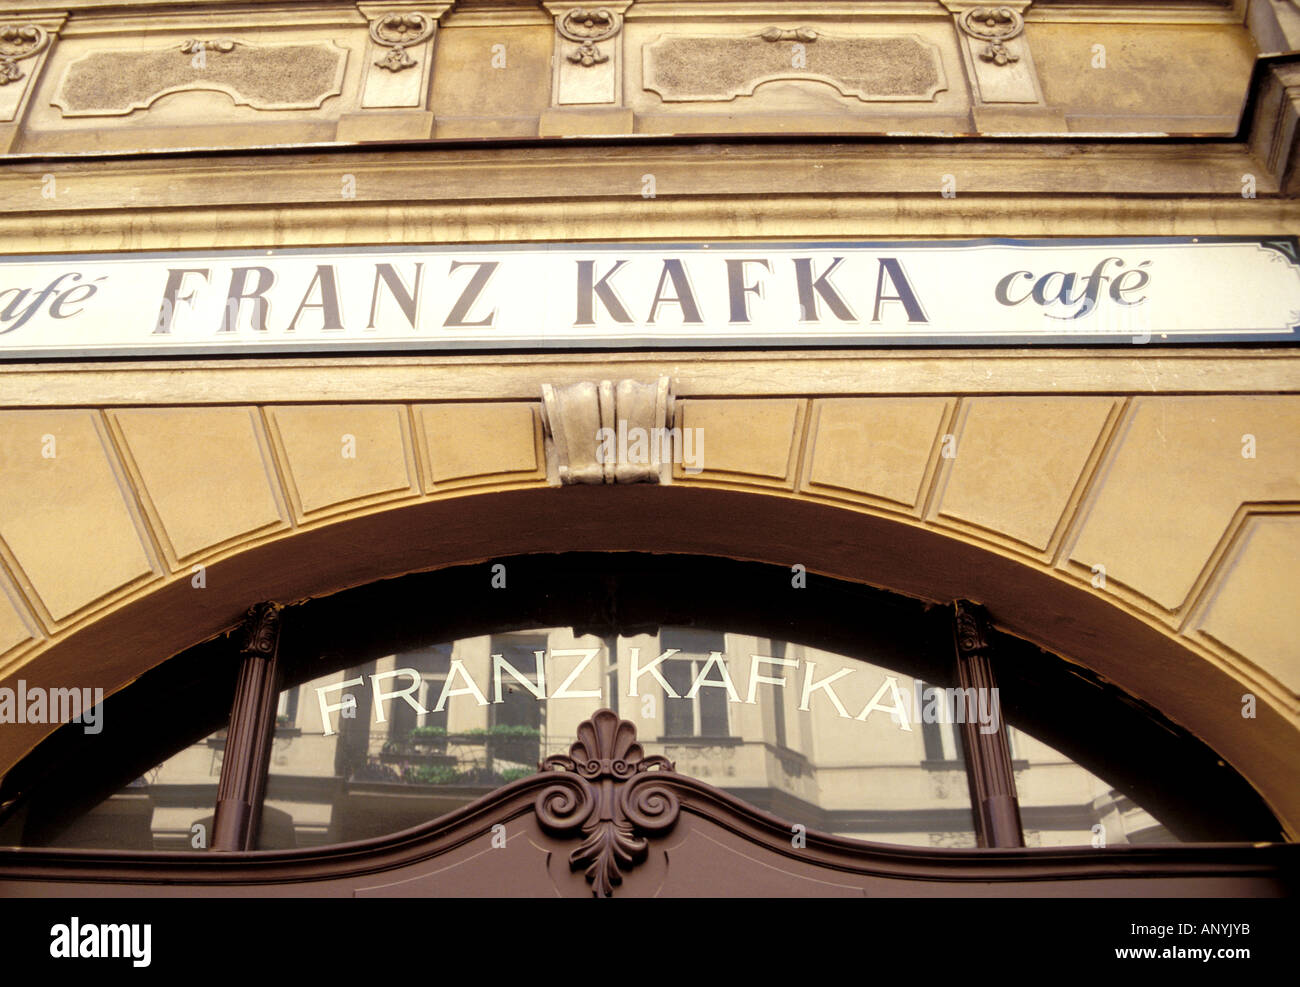 Europe, Czech Republic, Prague. Franz Kafka Cafe Stock Photo